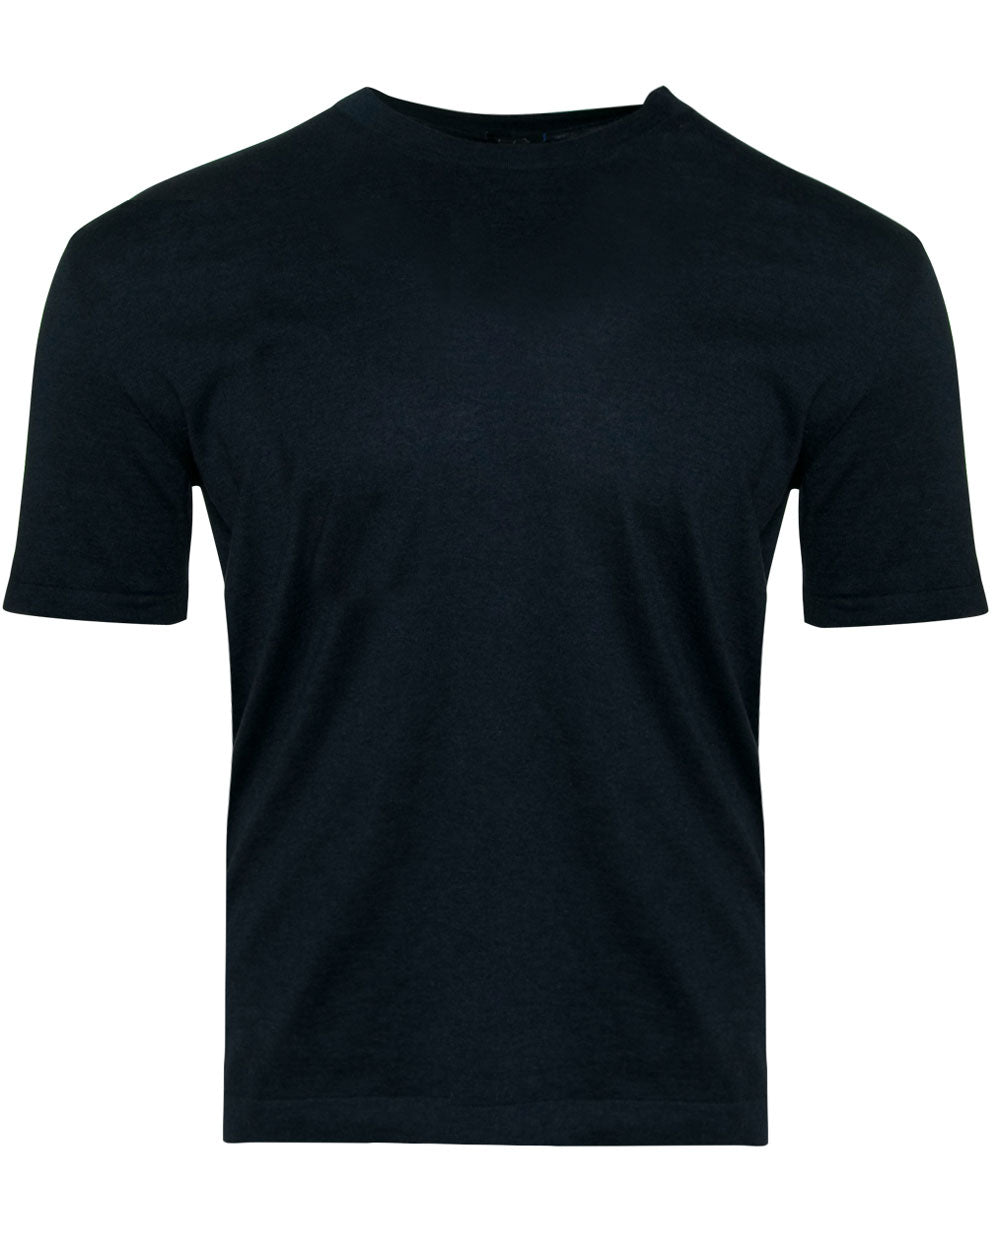 Navy Cashmere Blend T-Shirt